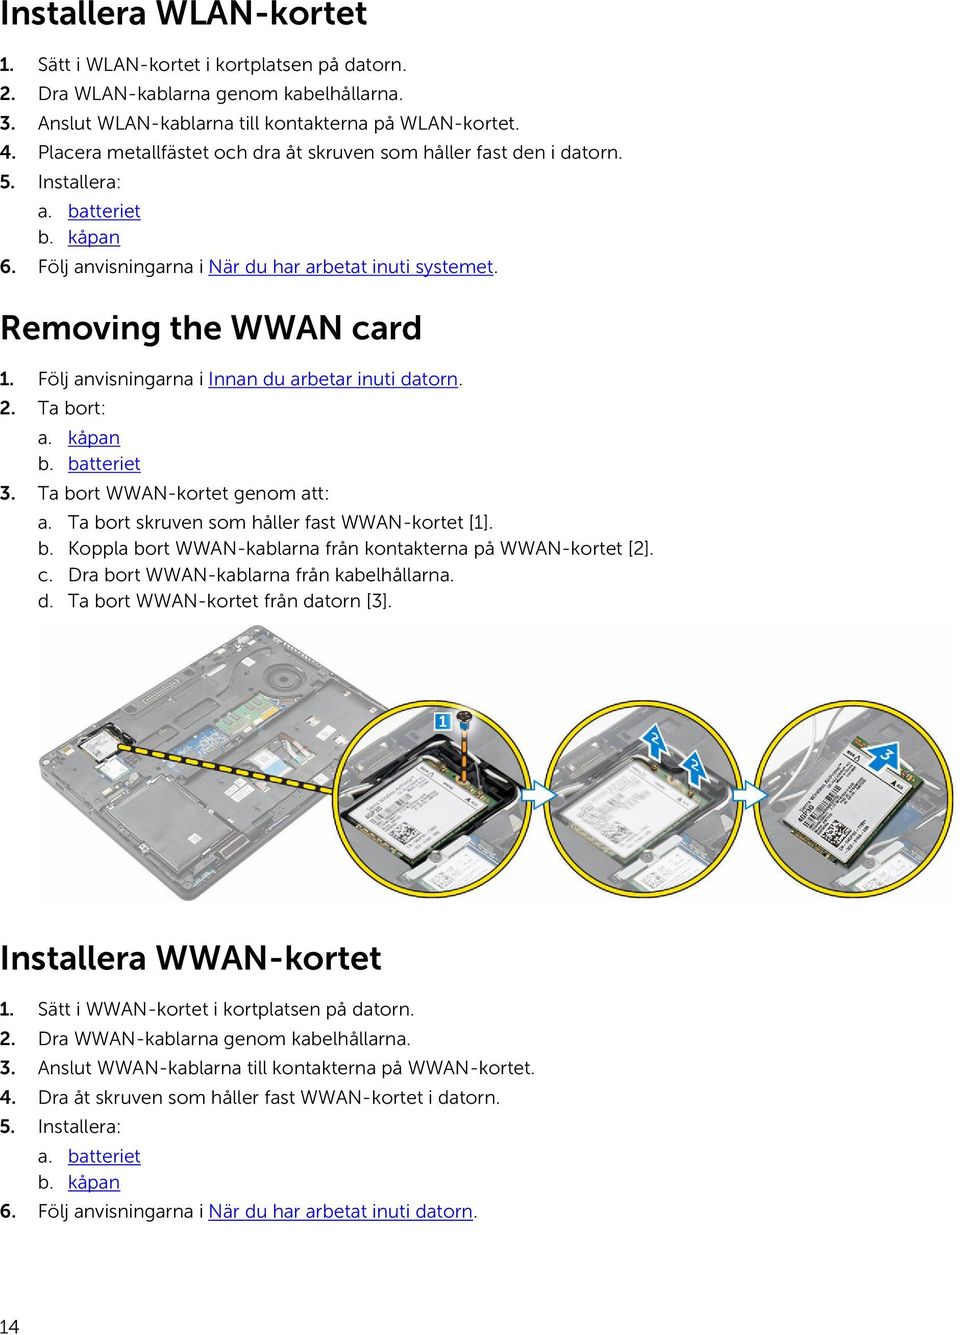 Följ anvisningarna i Innan du arbetar inuti datorn. 2. Ta bort: a. kåpan b. batteriet 3. Ta bort WWAN-kortet genom att: a. Ta bort skruven som håller fast WWAN-kortet [1]. b. Koppla bort WWAN-kablarna från kontakterna på WWAN-kortet [2].